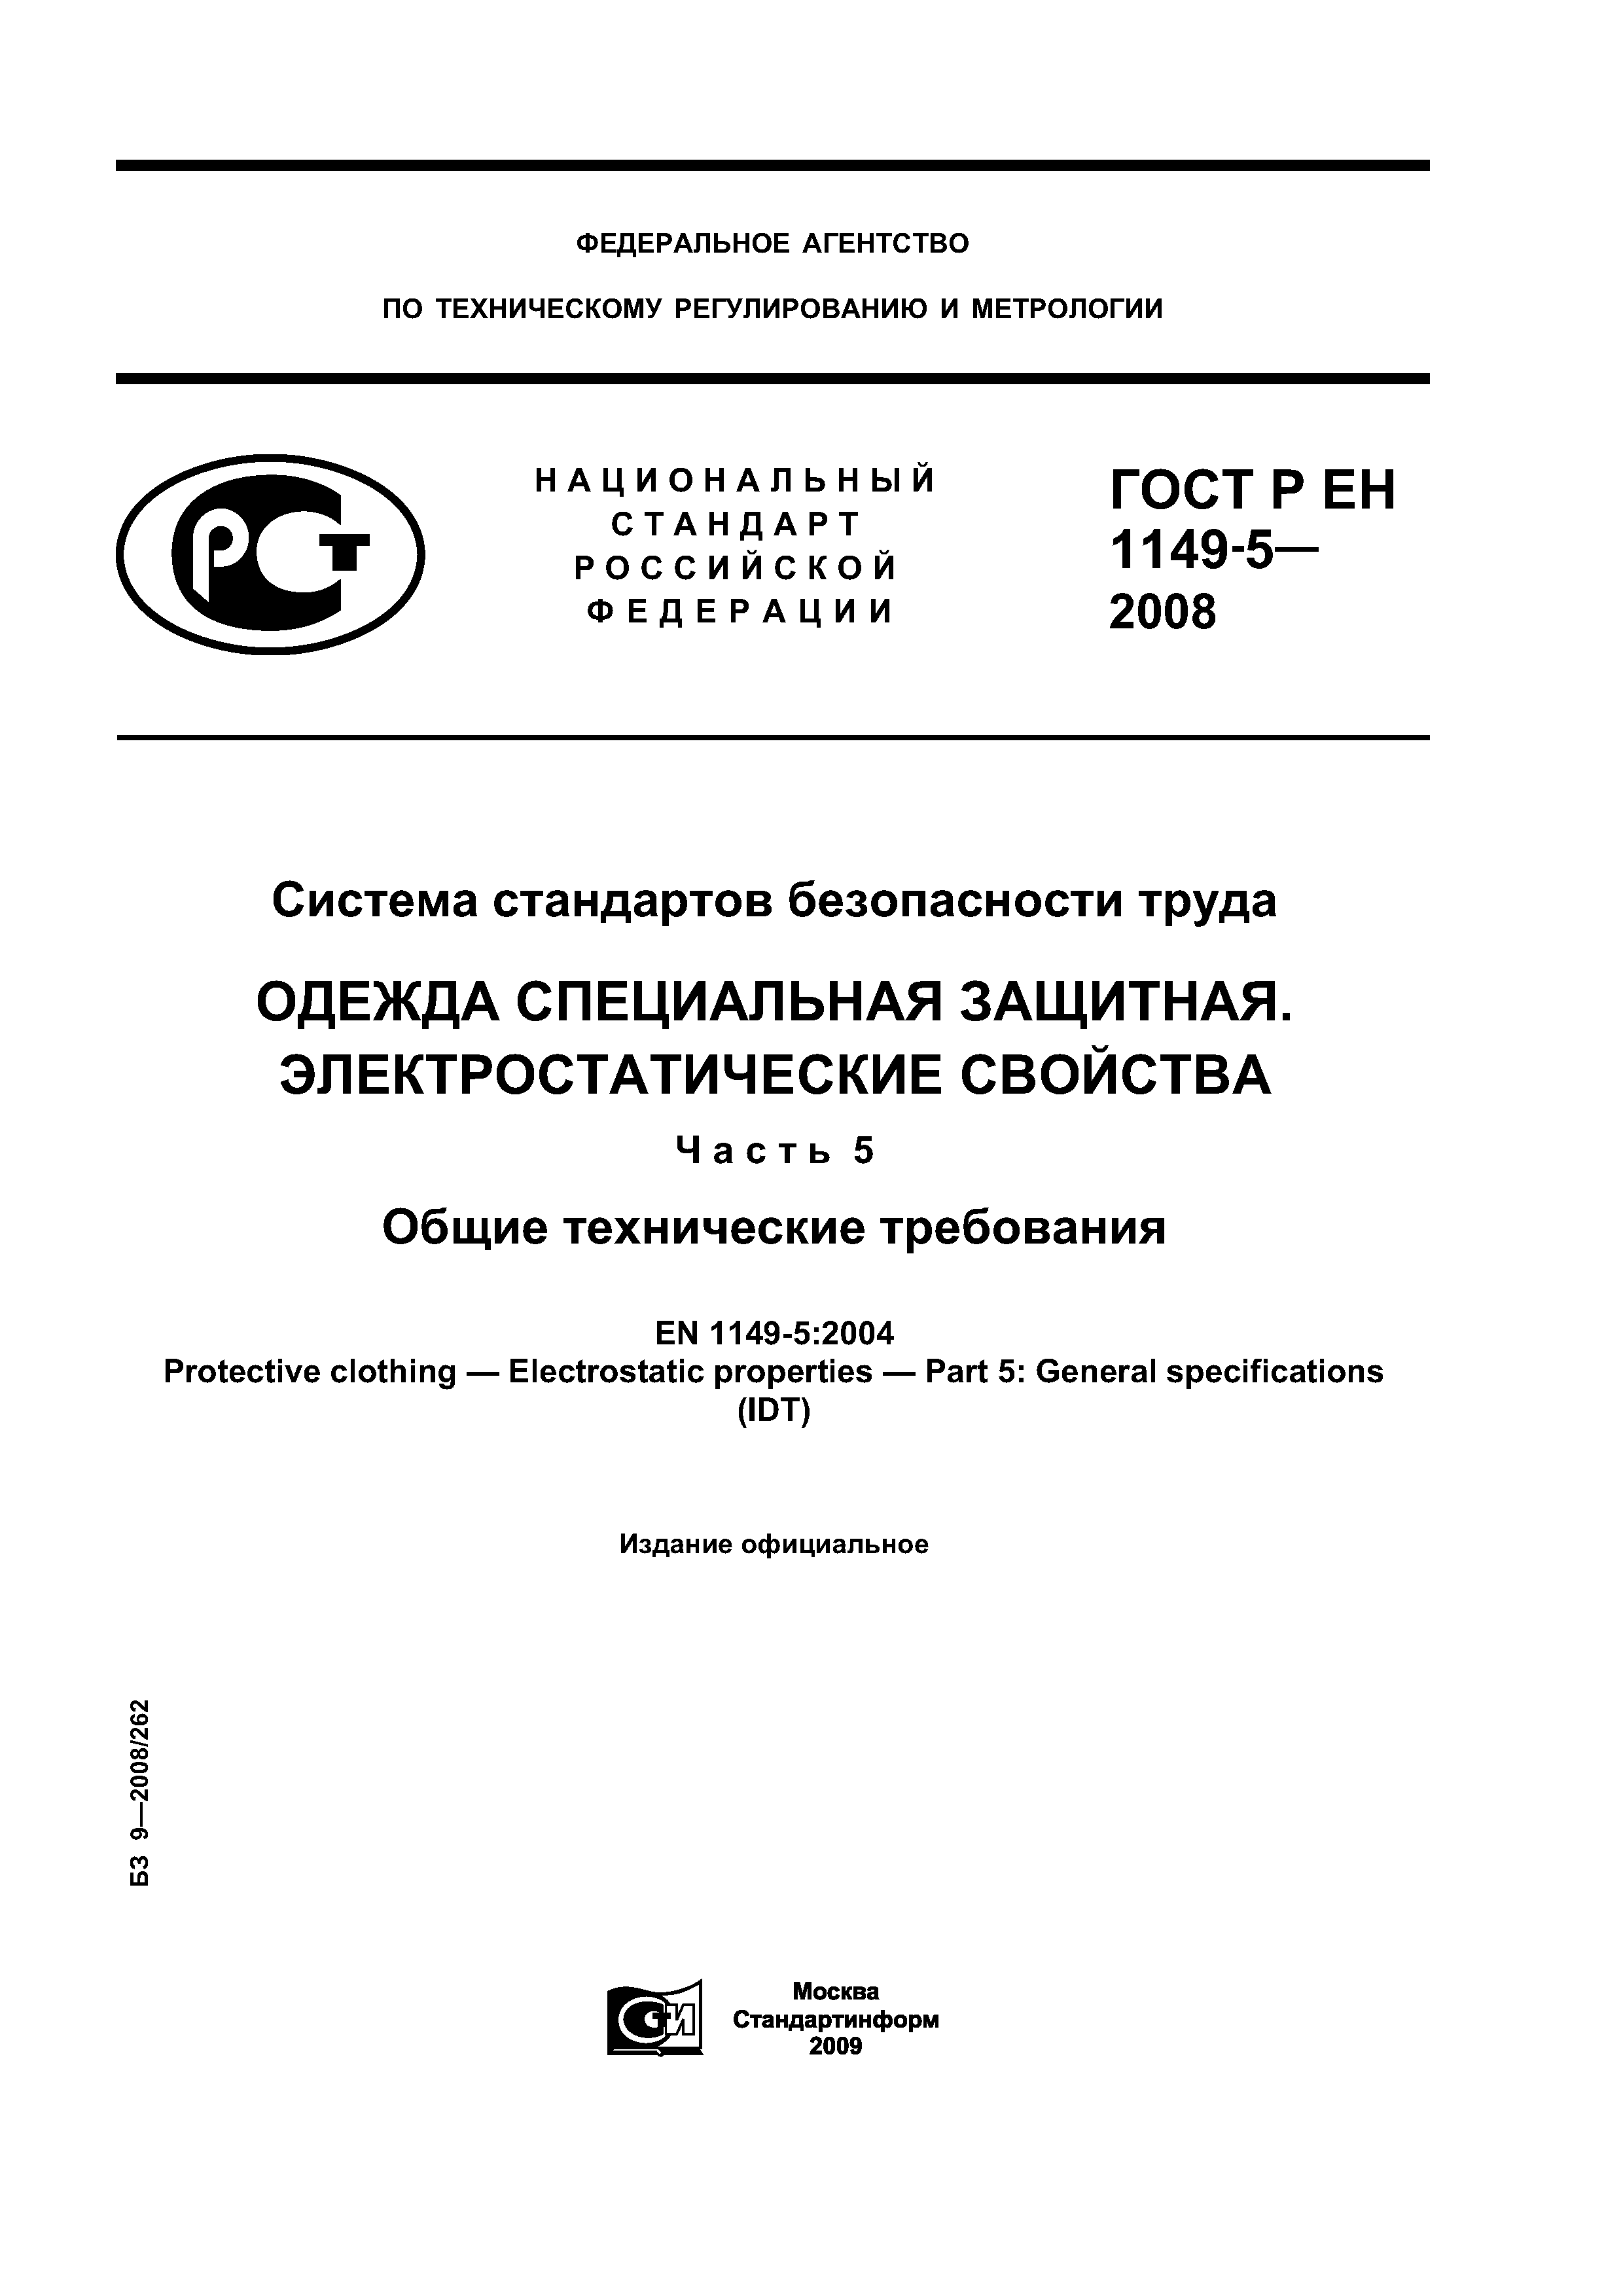 ГОСТ Р ЕН 1149-5-2008